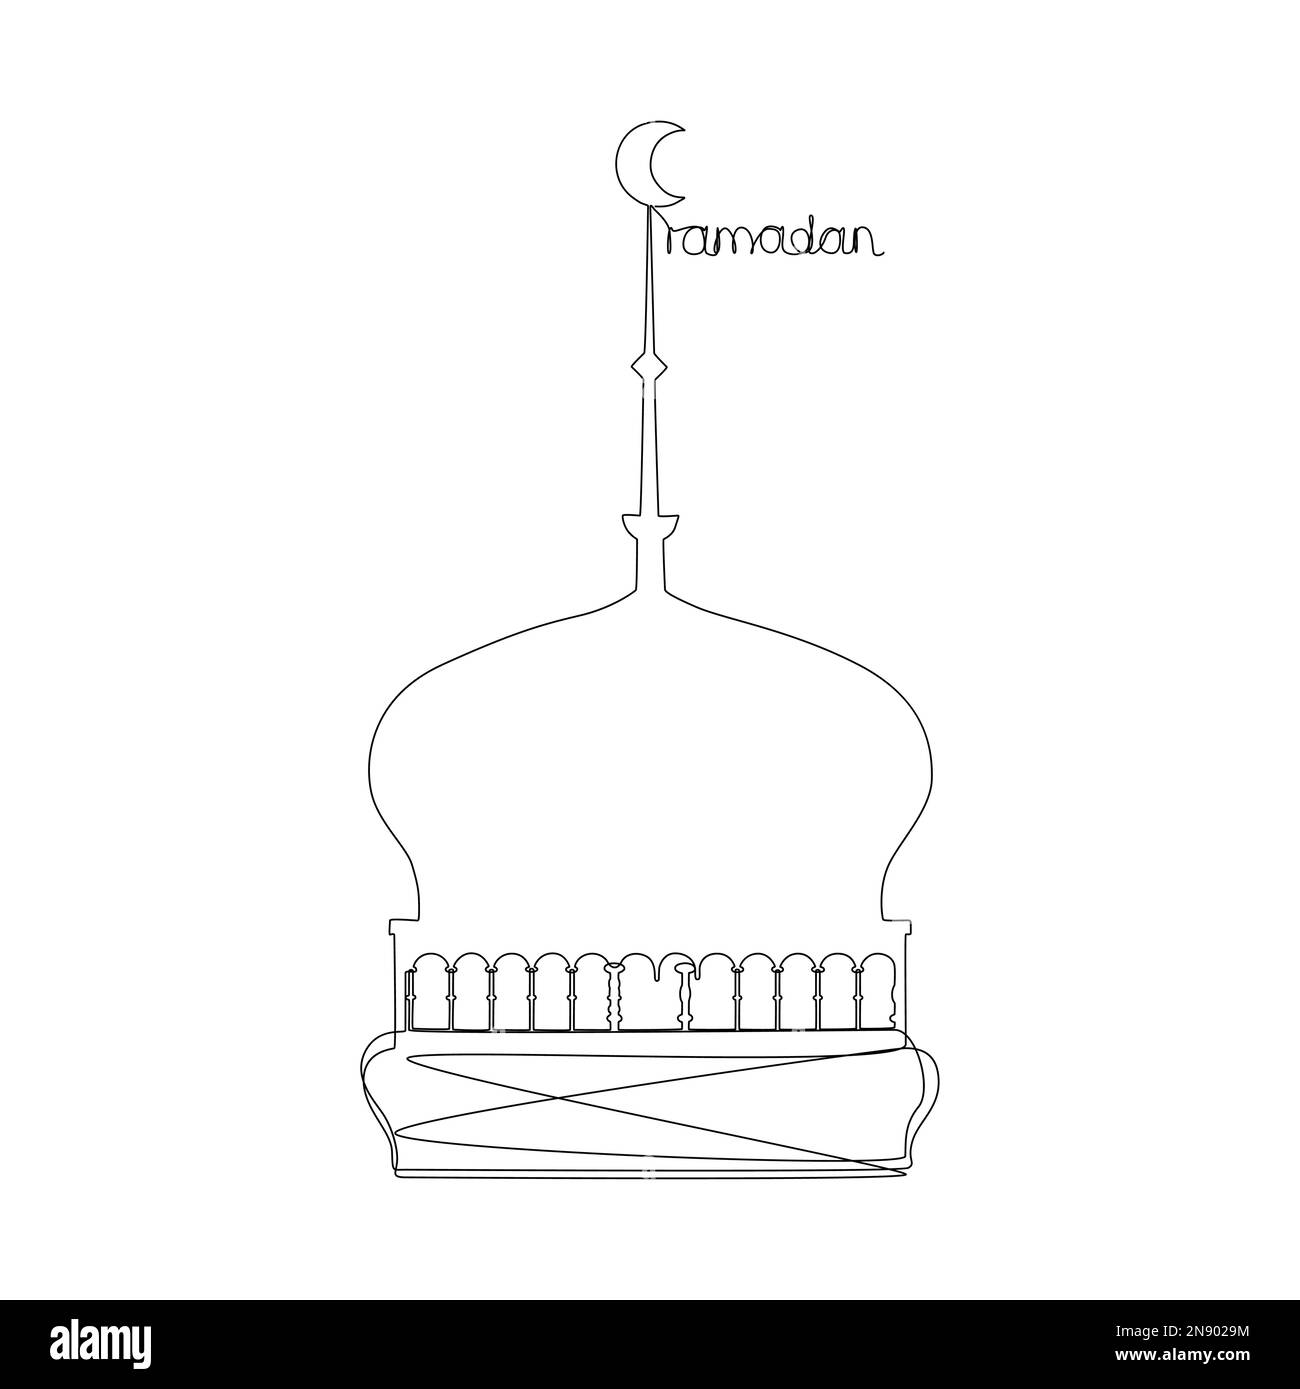 Eine durchgehende Zeile Ramadan-Poster mit arabischer Architektur. Vektorkonzept zur Darstellung dünner Linien. Kontur Zeichnen kreativer Ideen. Stock Vektor